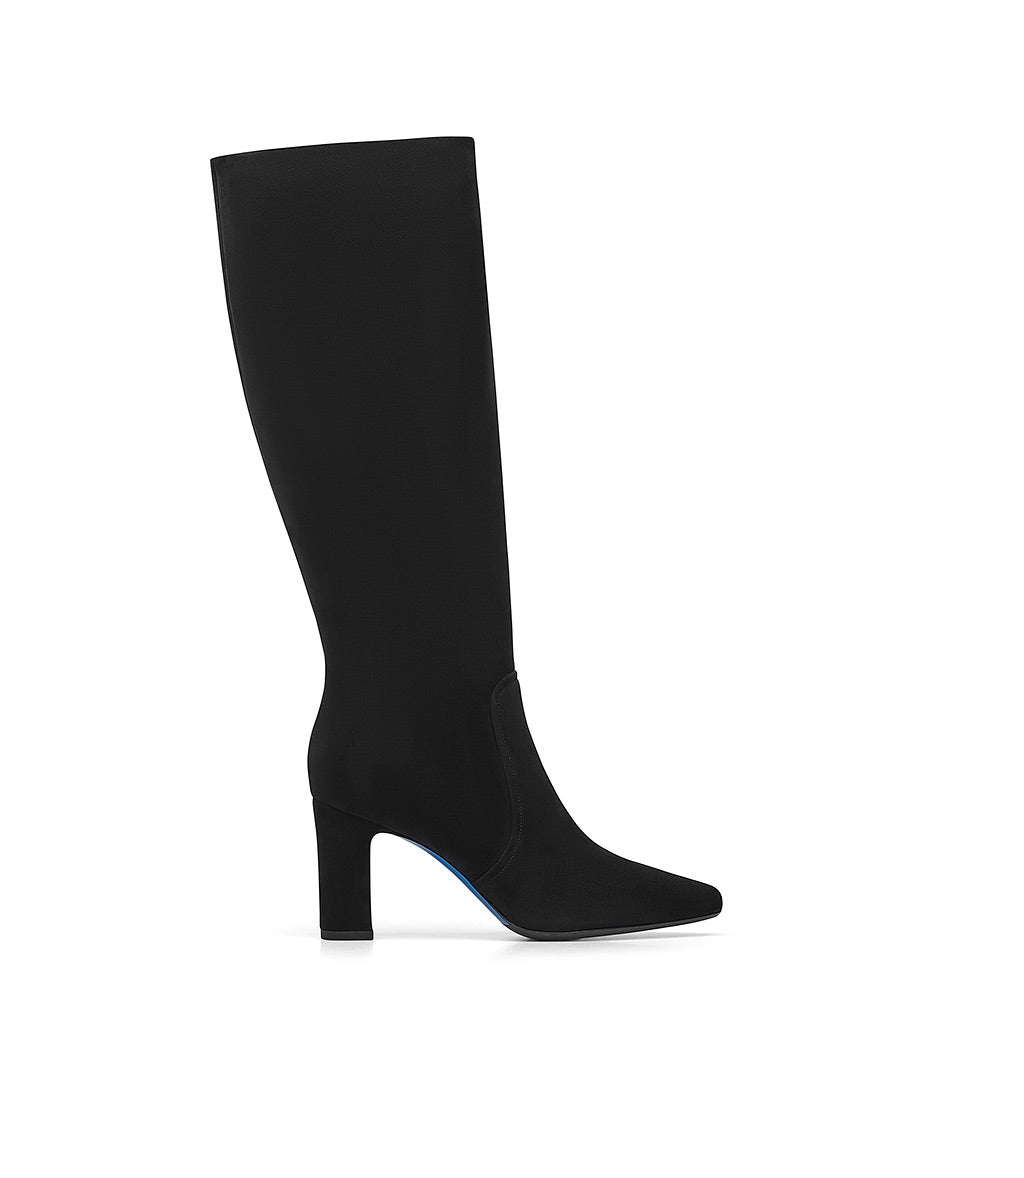 Premium AI Image | Designer heeled boots in black suede